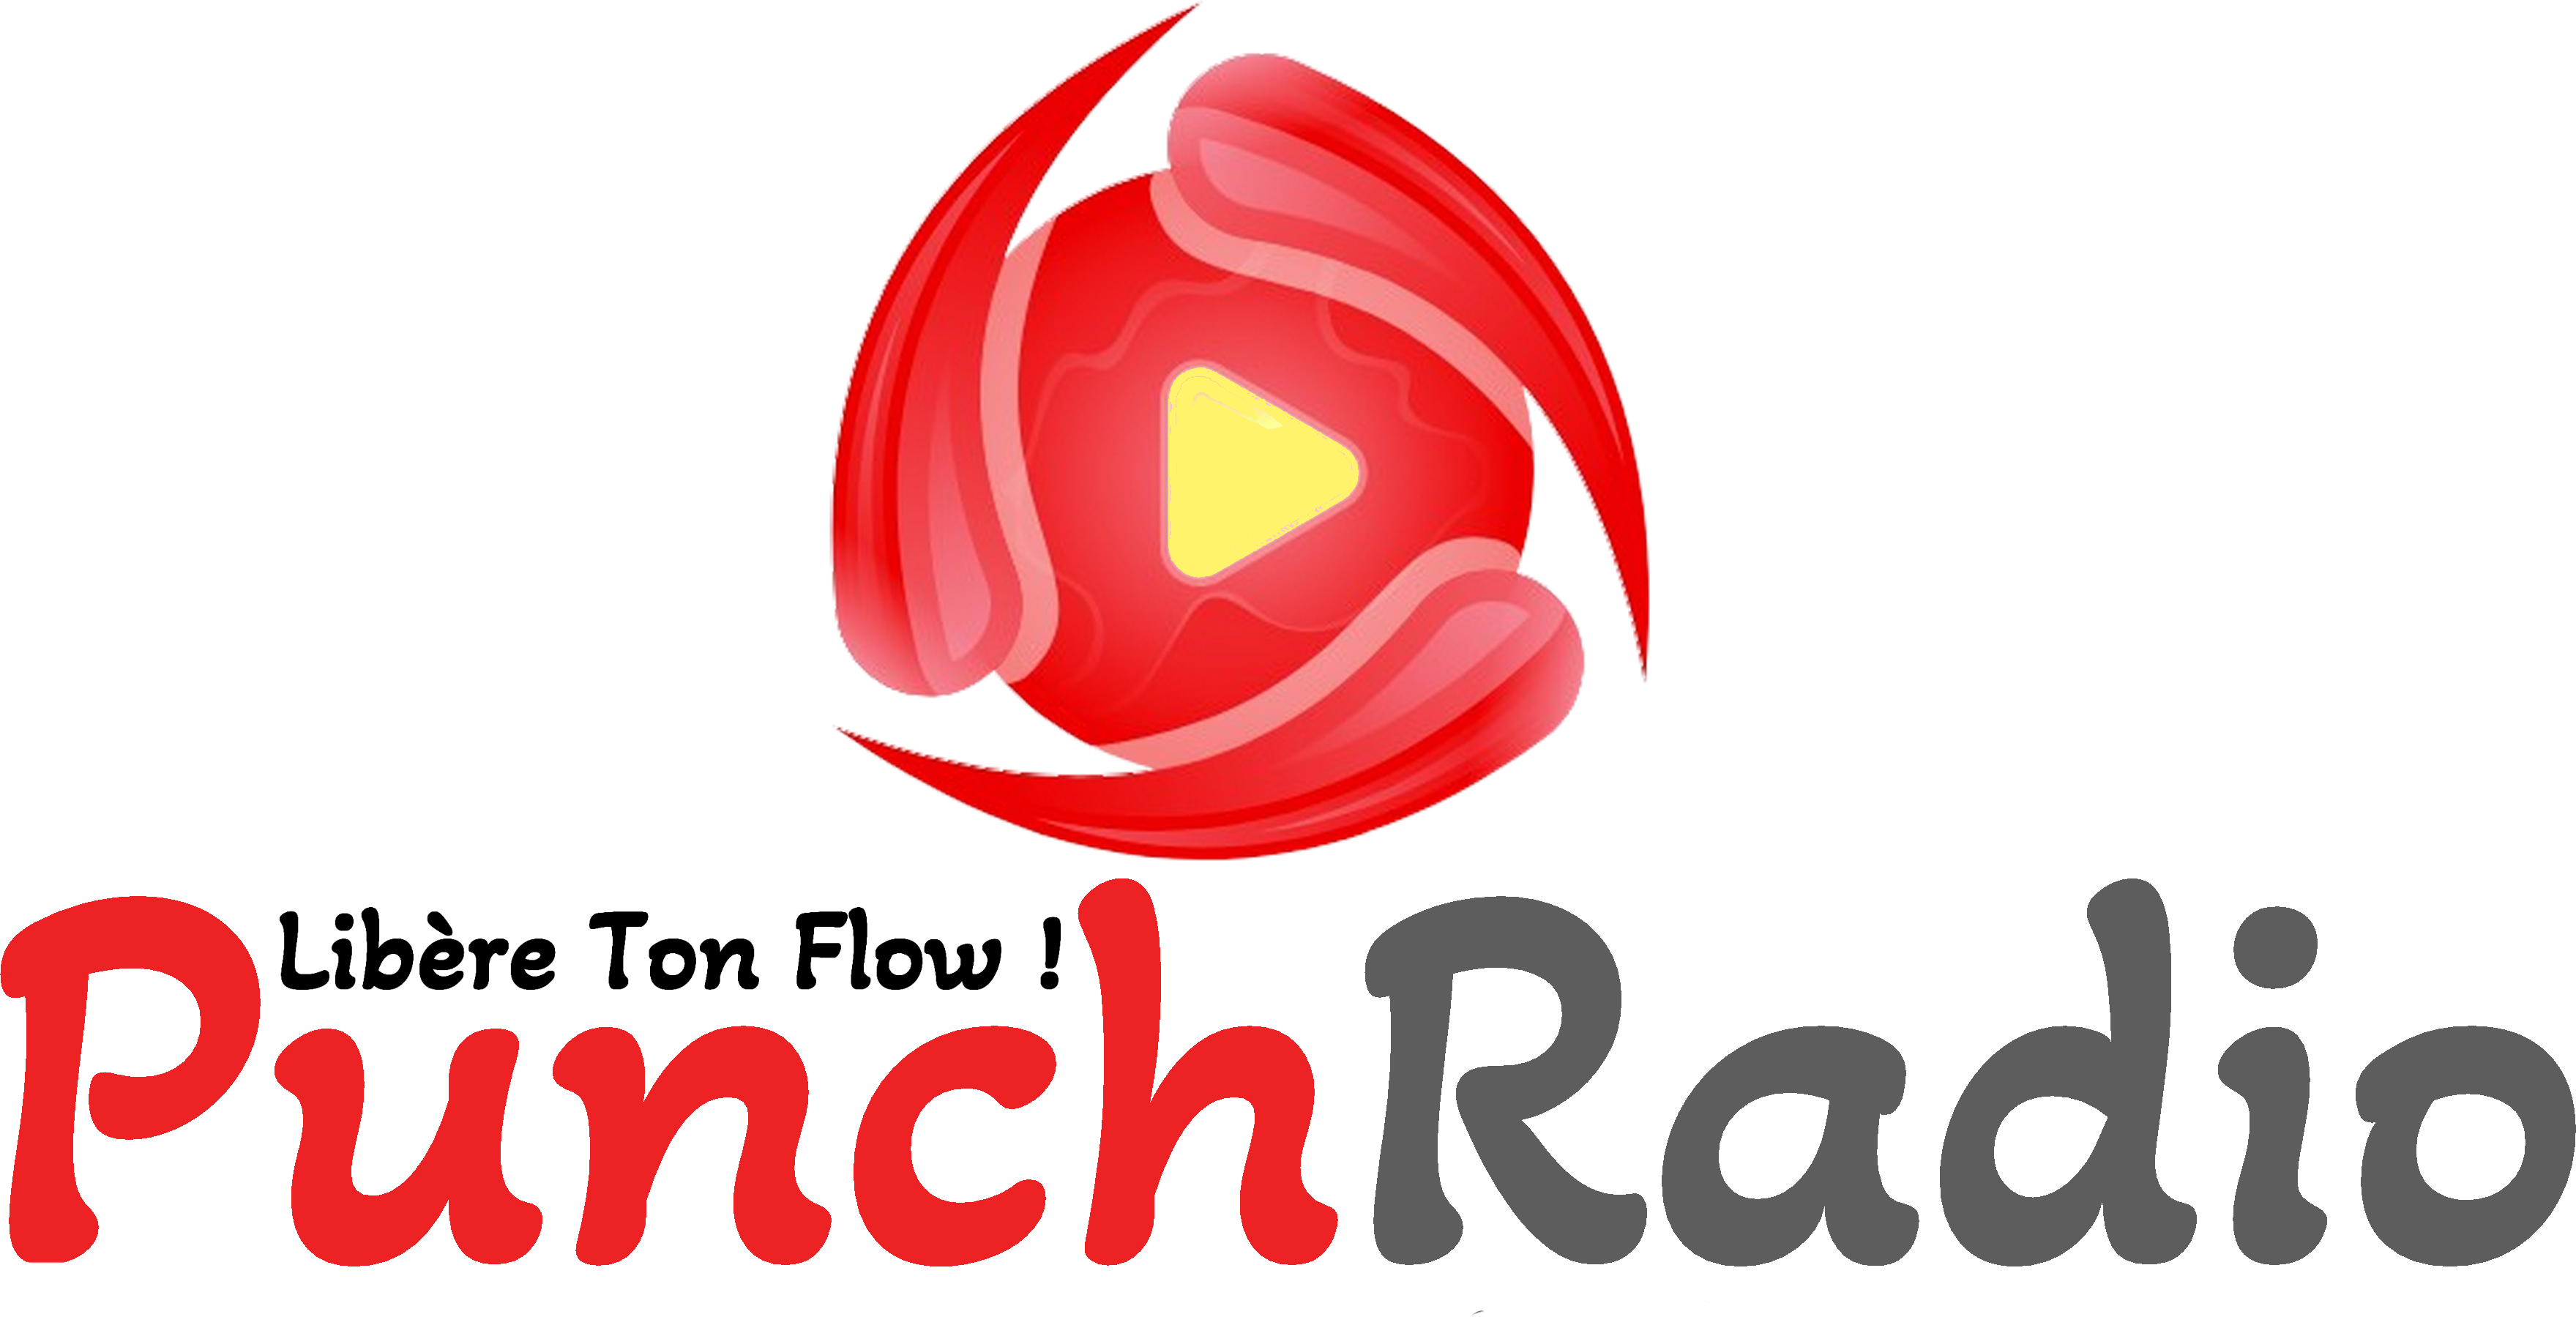 Logo PunchradioFR couleur noir et transparent.png (1.74 MB)